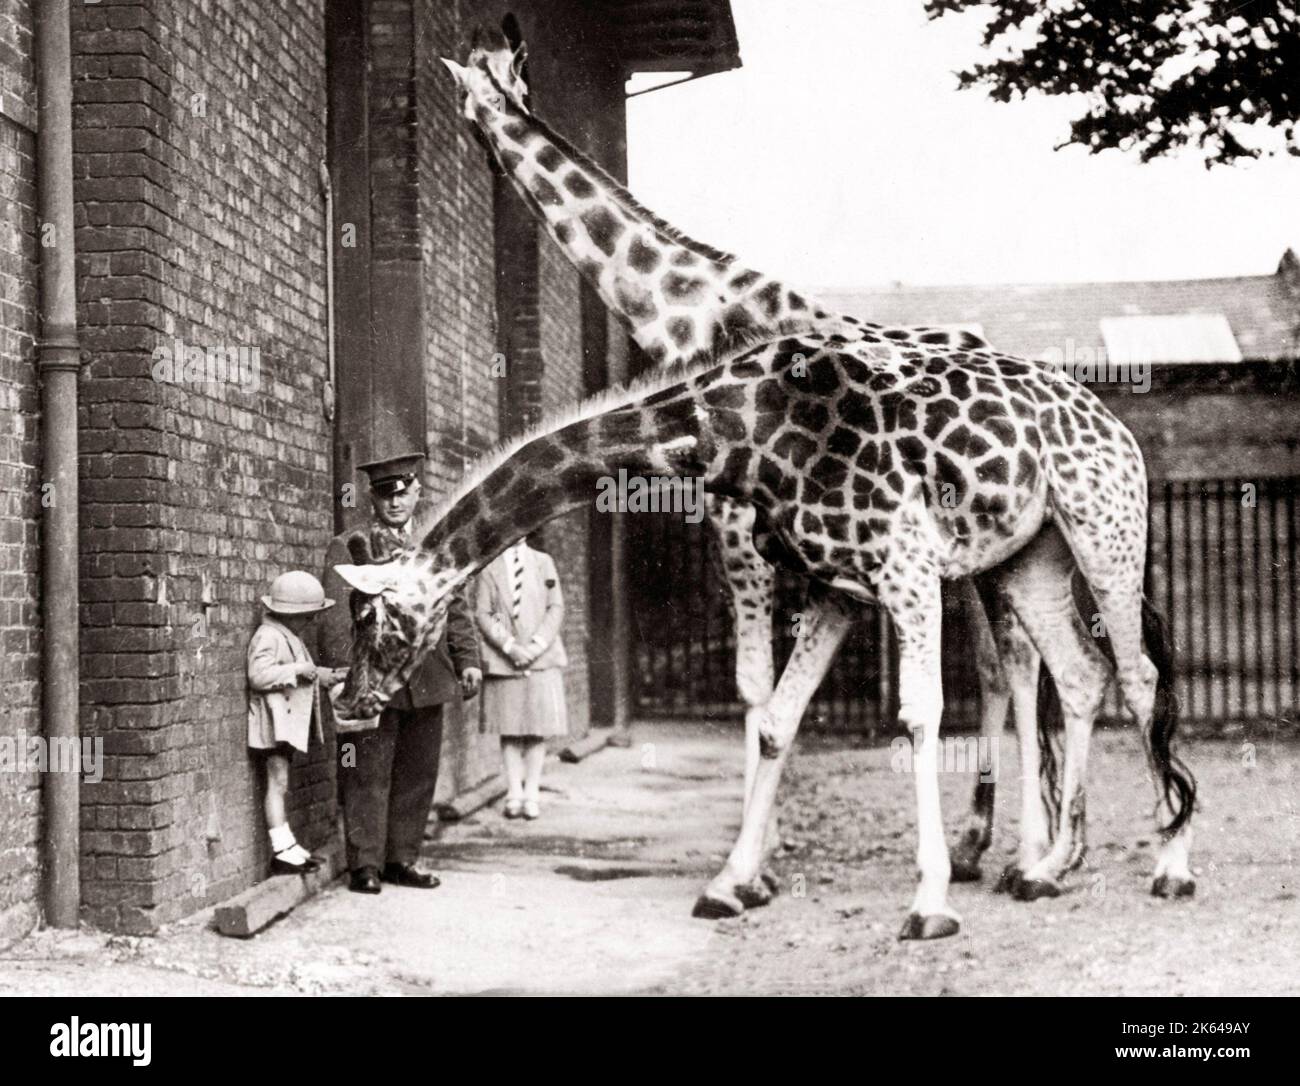 1930 drücken Sie die Taste Foto - füttern Giraffen im Zoo von London. Stockfoto